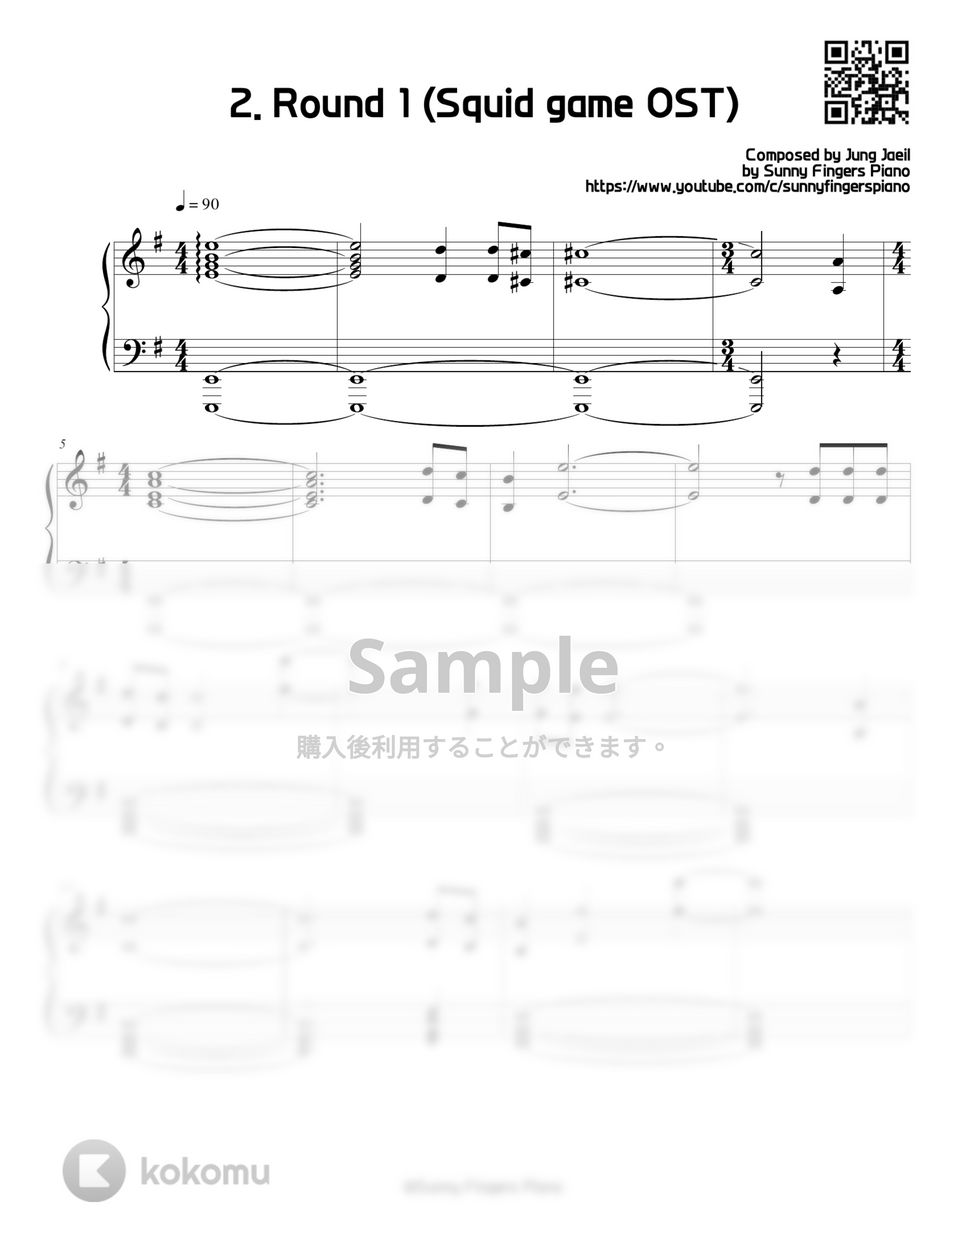 イカゲーム OST / BGM - 2. Round 1 (Series) by Sunny Fingers Piano